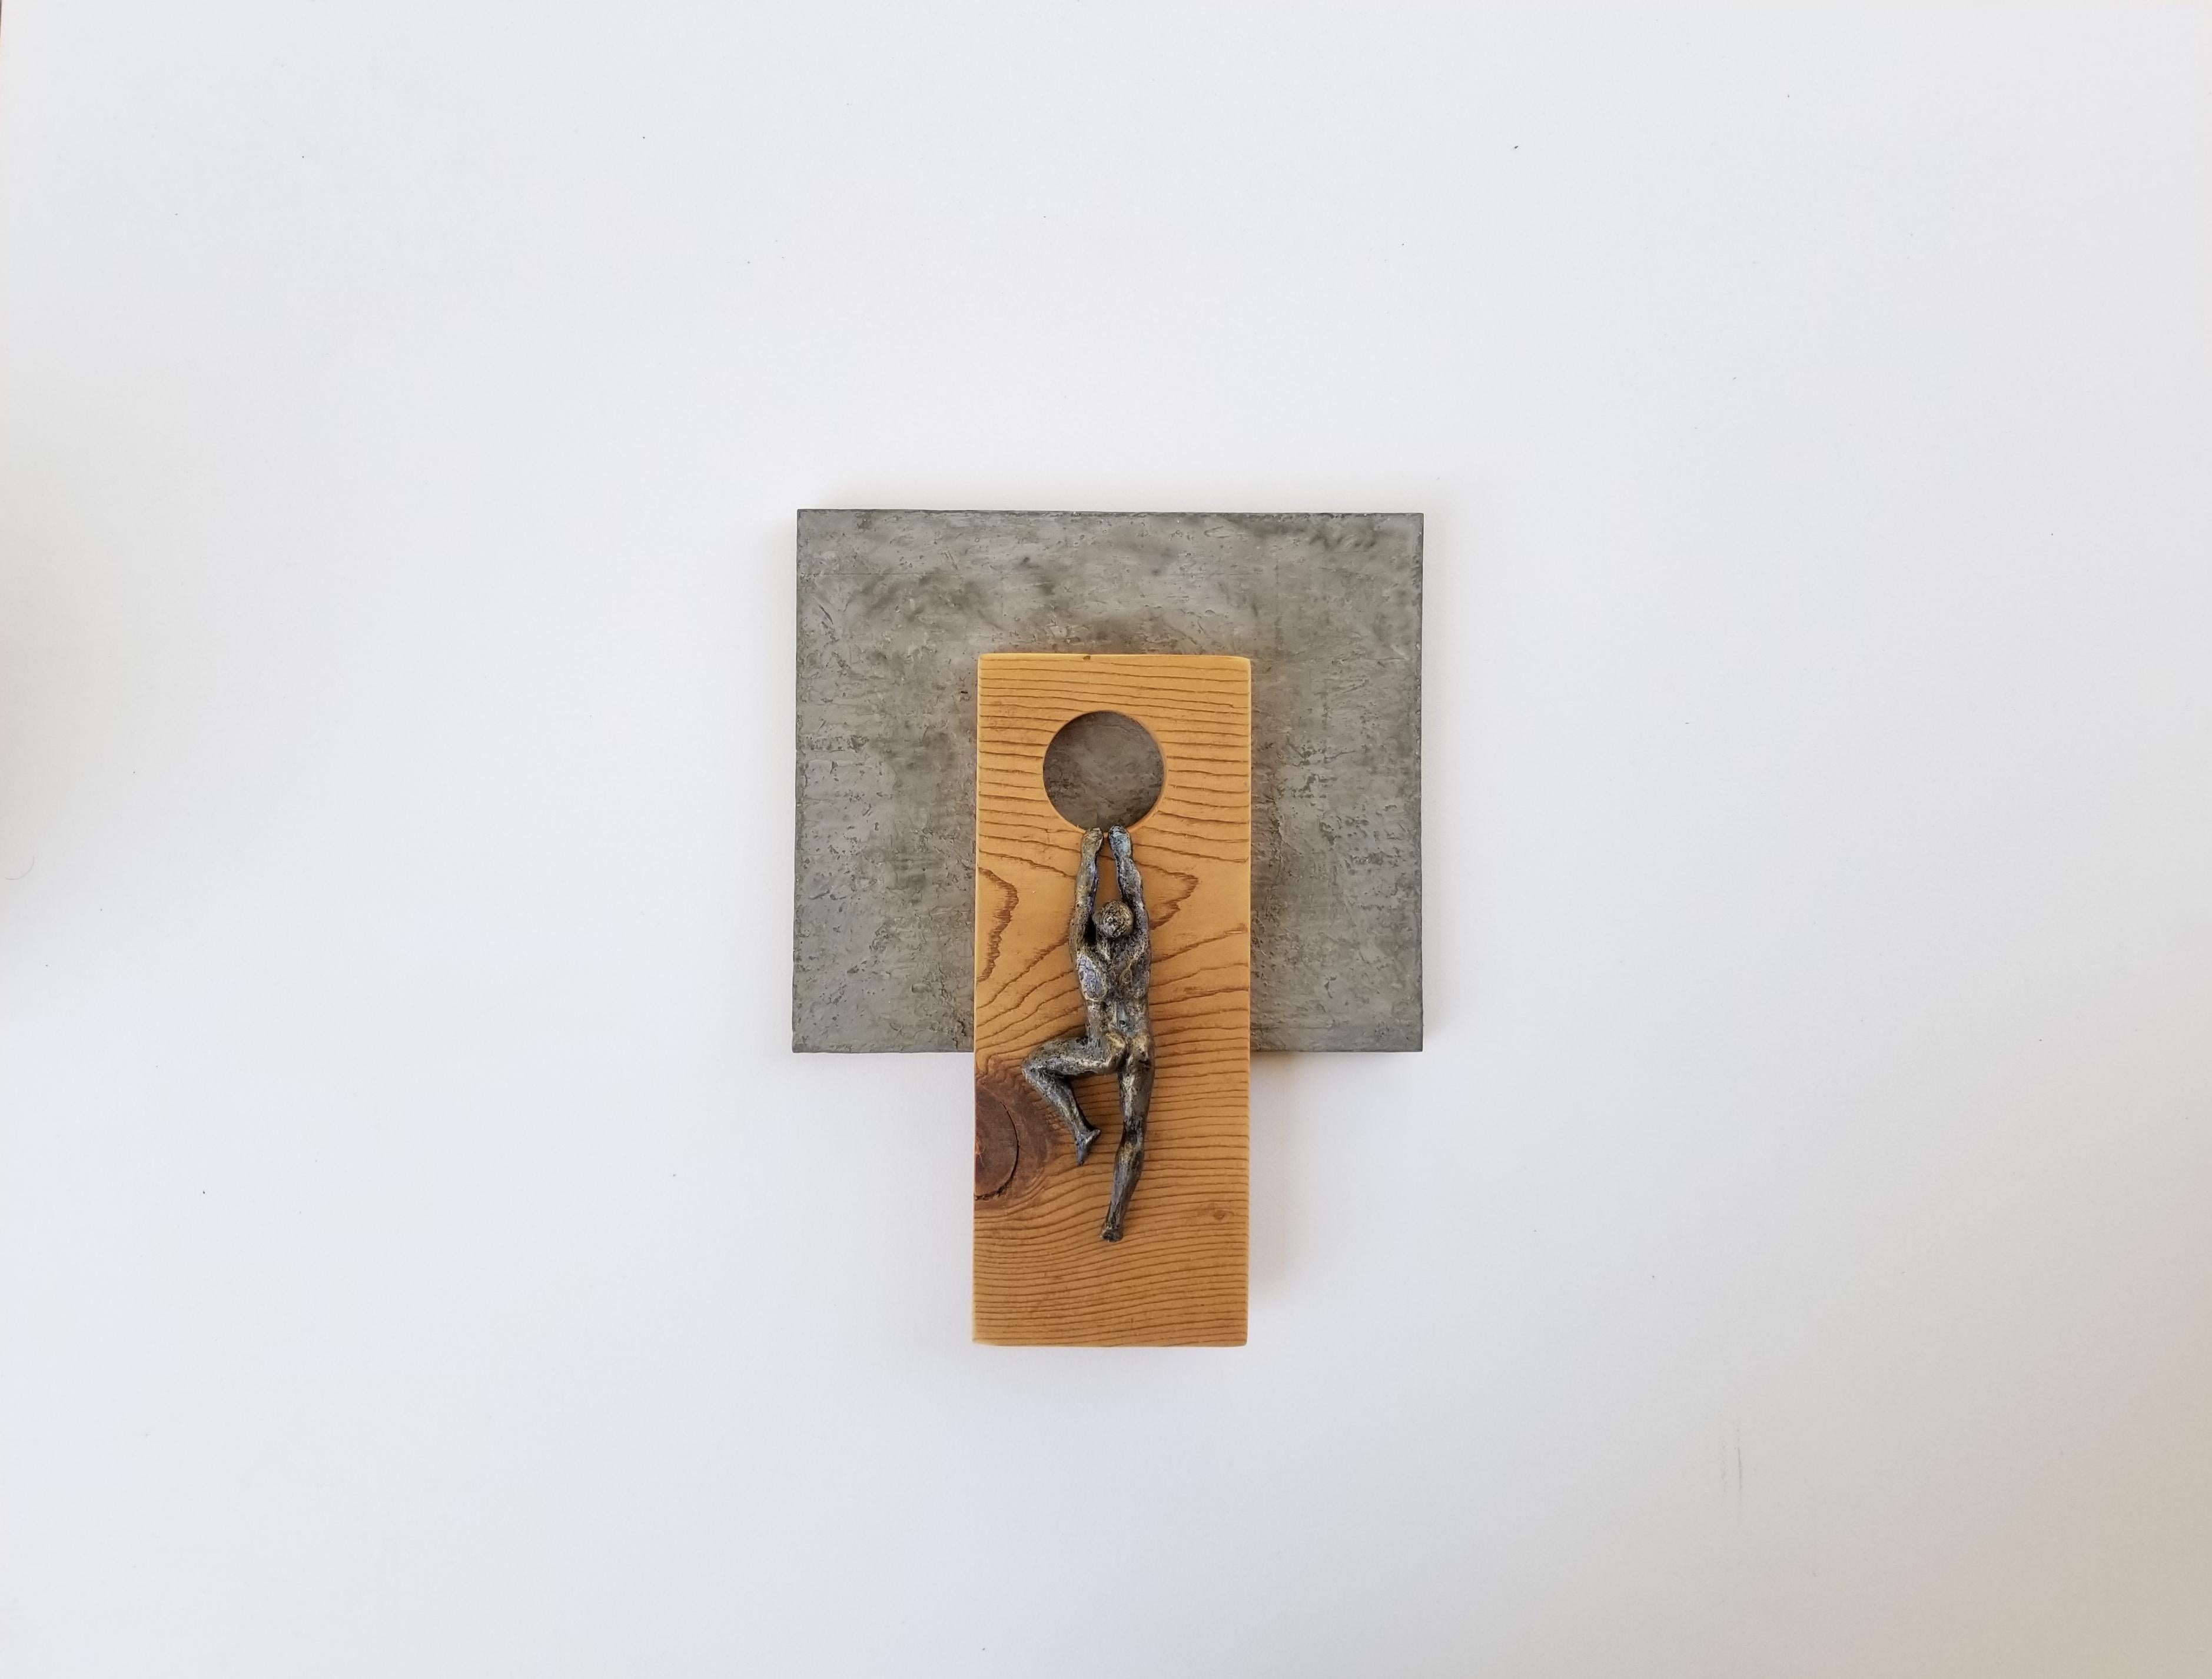 <p>Commentaires de l'artiste<br>L'artiste Yelitza Diaz présente une figure nue suspendue à un module en bois. Fait partie de sa série Climbers, qui représente des personnes escaladant des découpes géométriques en bois. Yelitza propose la pièce avec